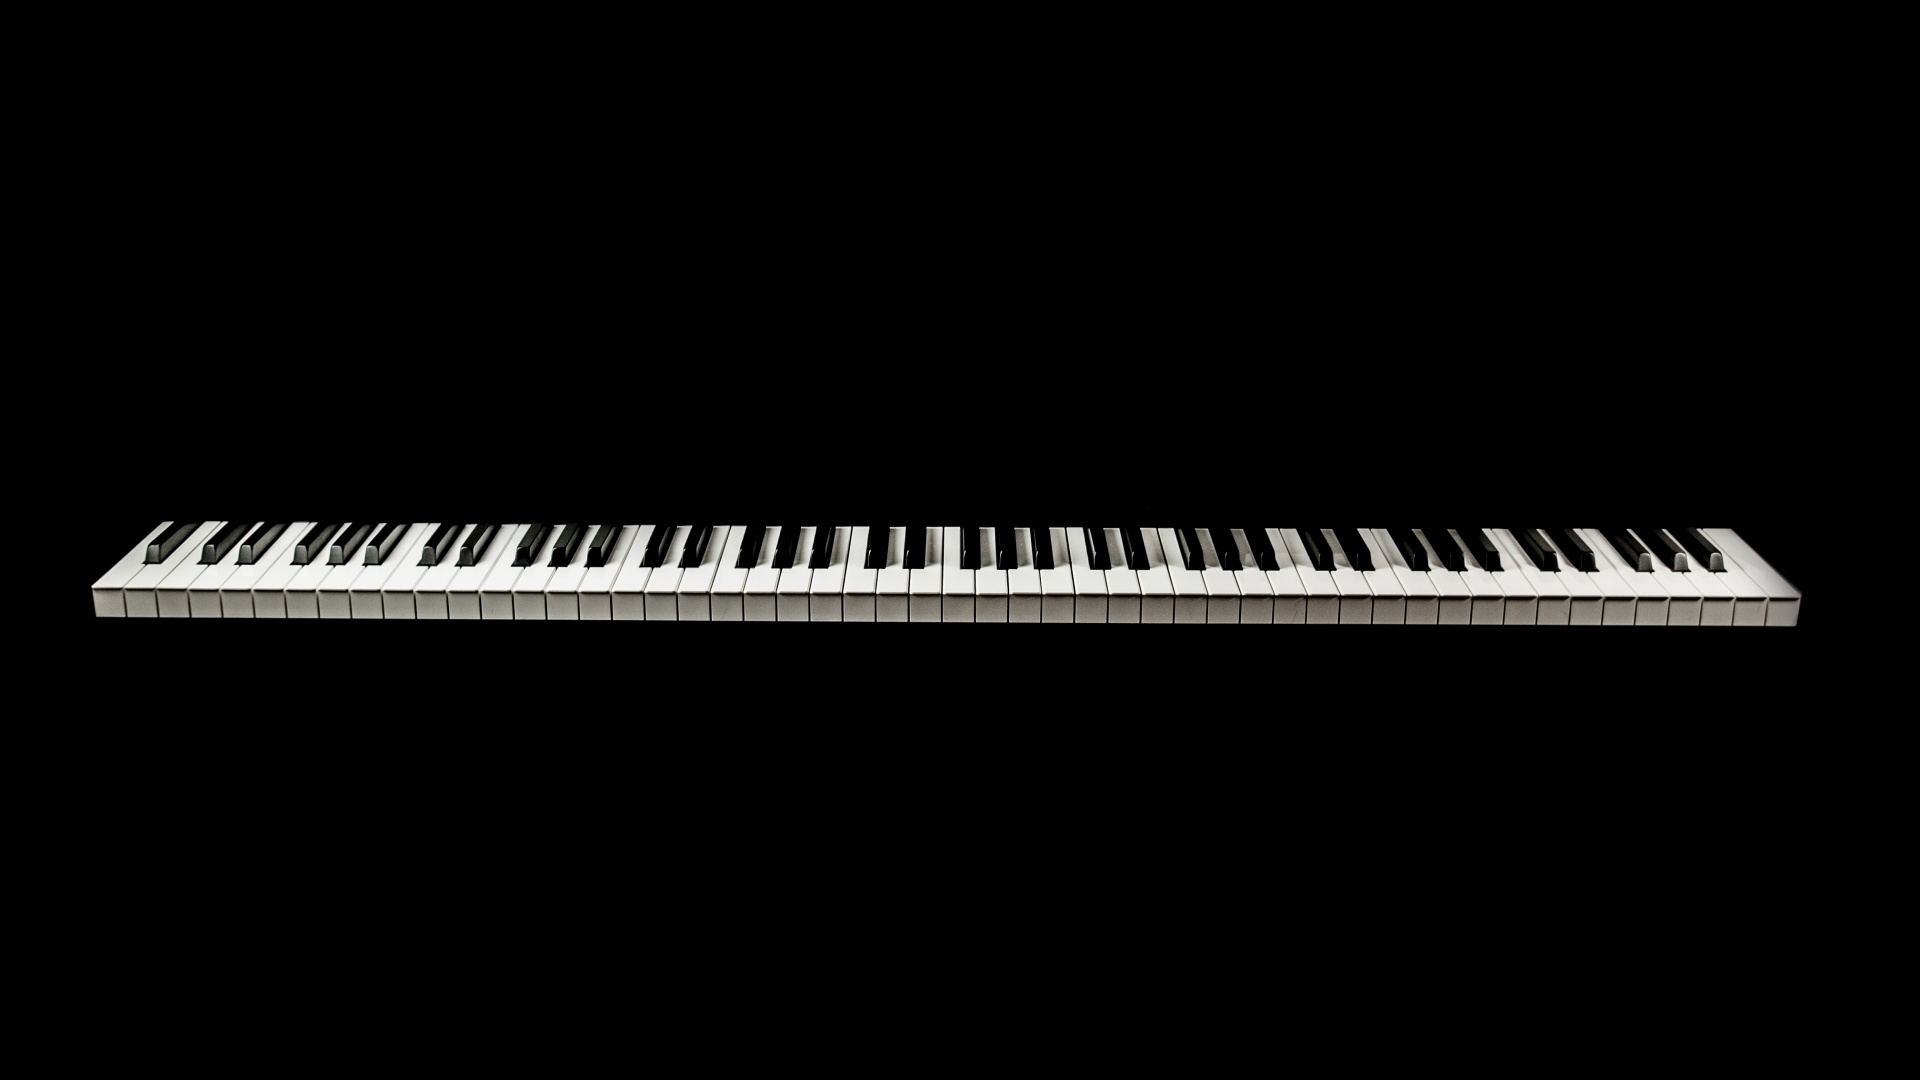 Teclado Musical, Piano Digital, Piano Eléctrico, Piano, Teclado. Wallpaper in 1920x1080 Resolution